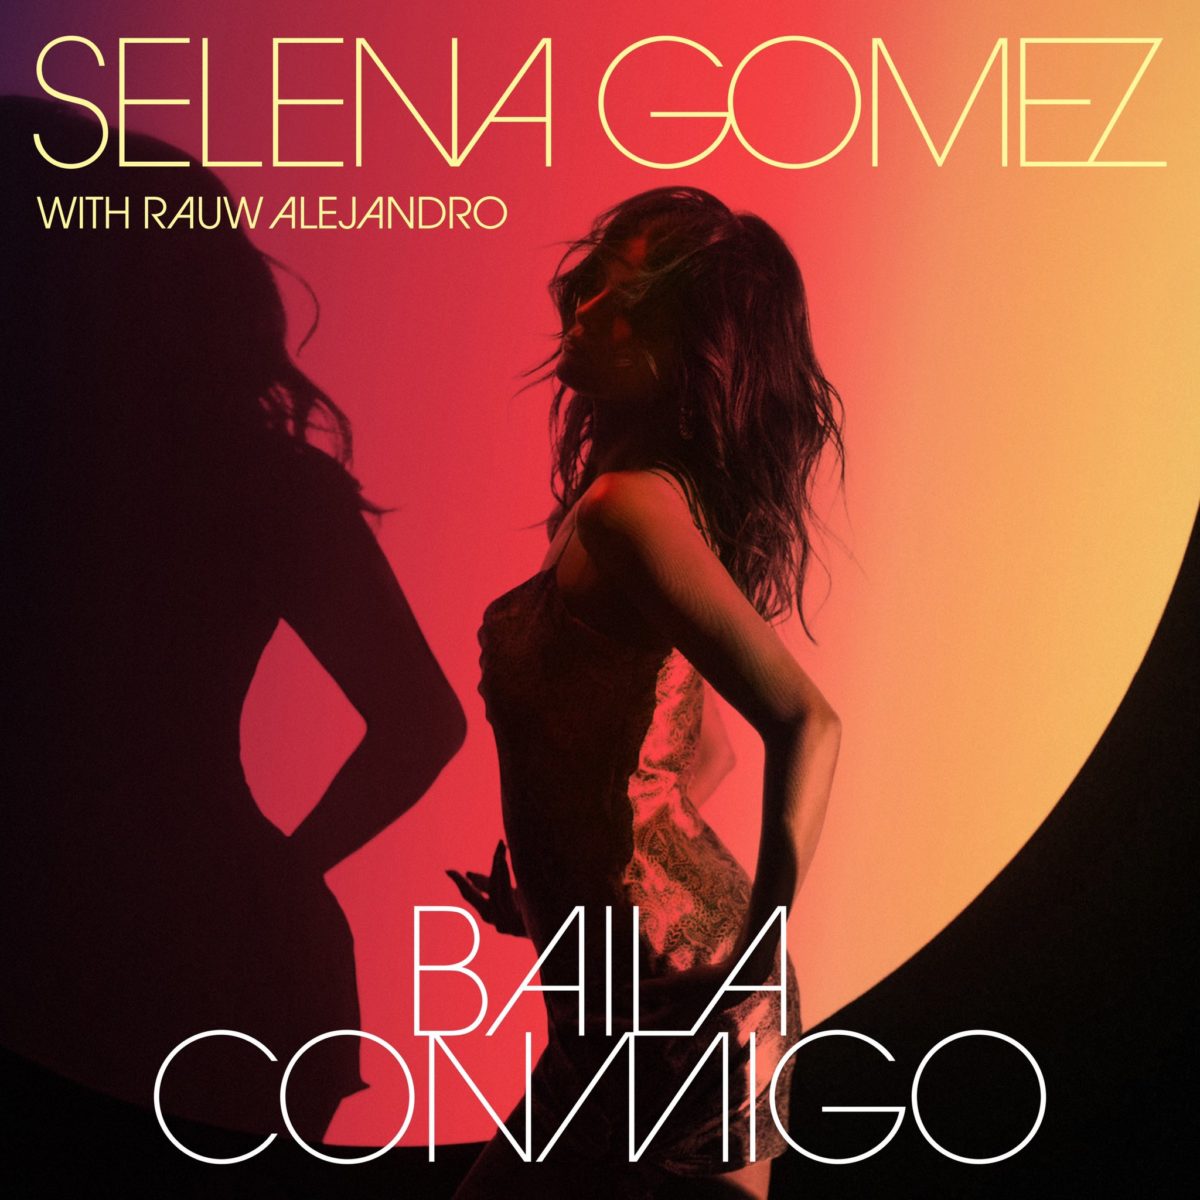 La cantante Selena Gómez anuncia próxima canción en español.